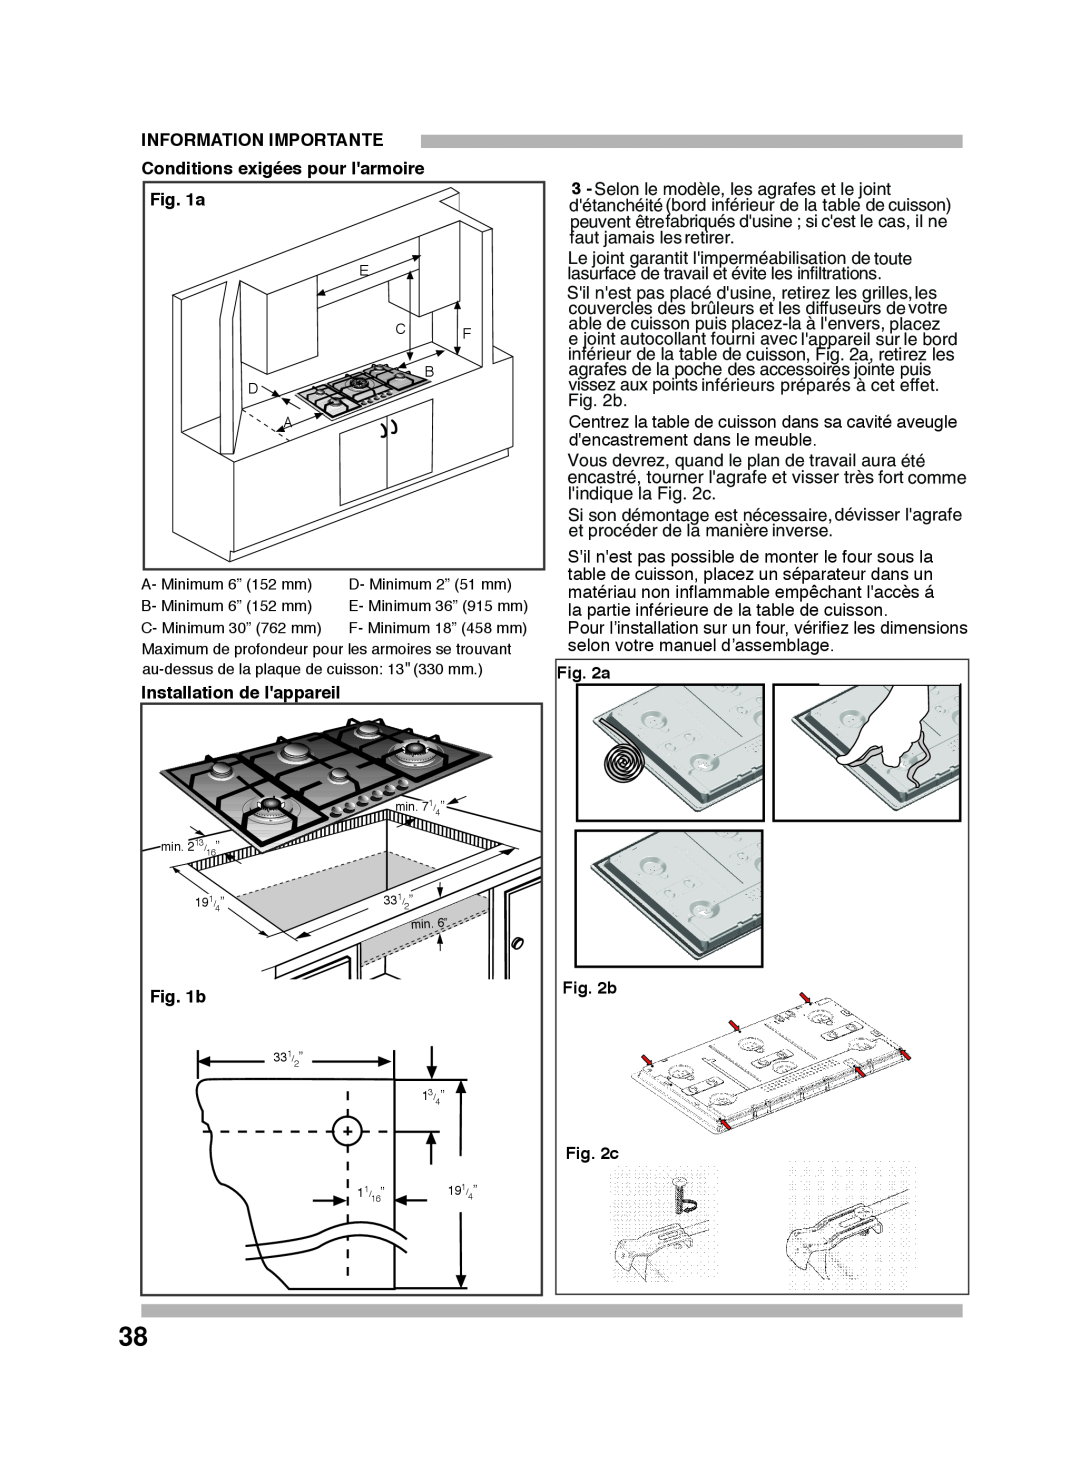 Bosch Appliances PGL985UC manual INFORMATION IMPORTANTE Conditions exigées pour larmoire, Installation de lappareil, b 